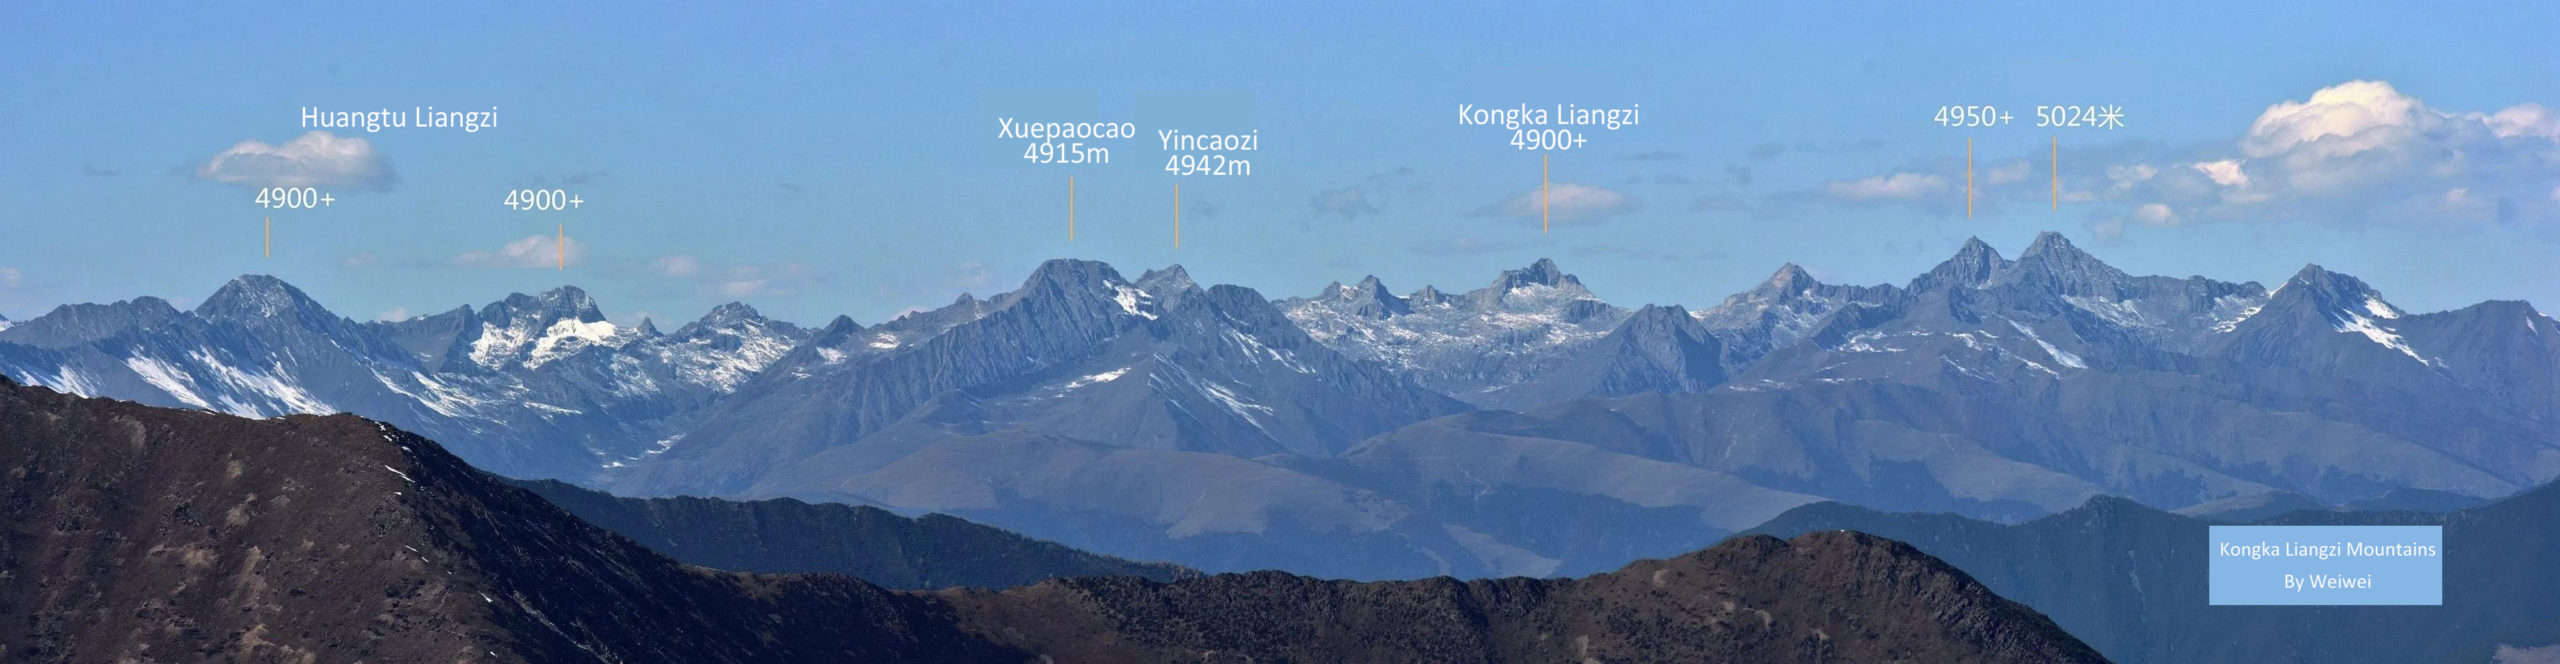 Jiajin Mountains Kongka